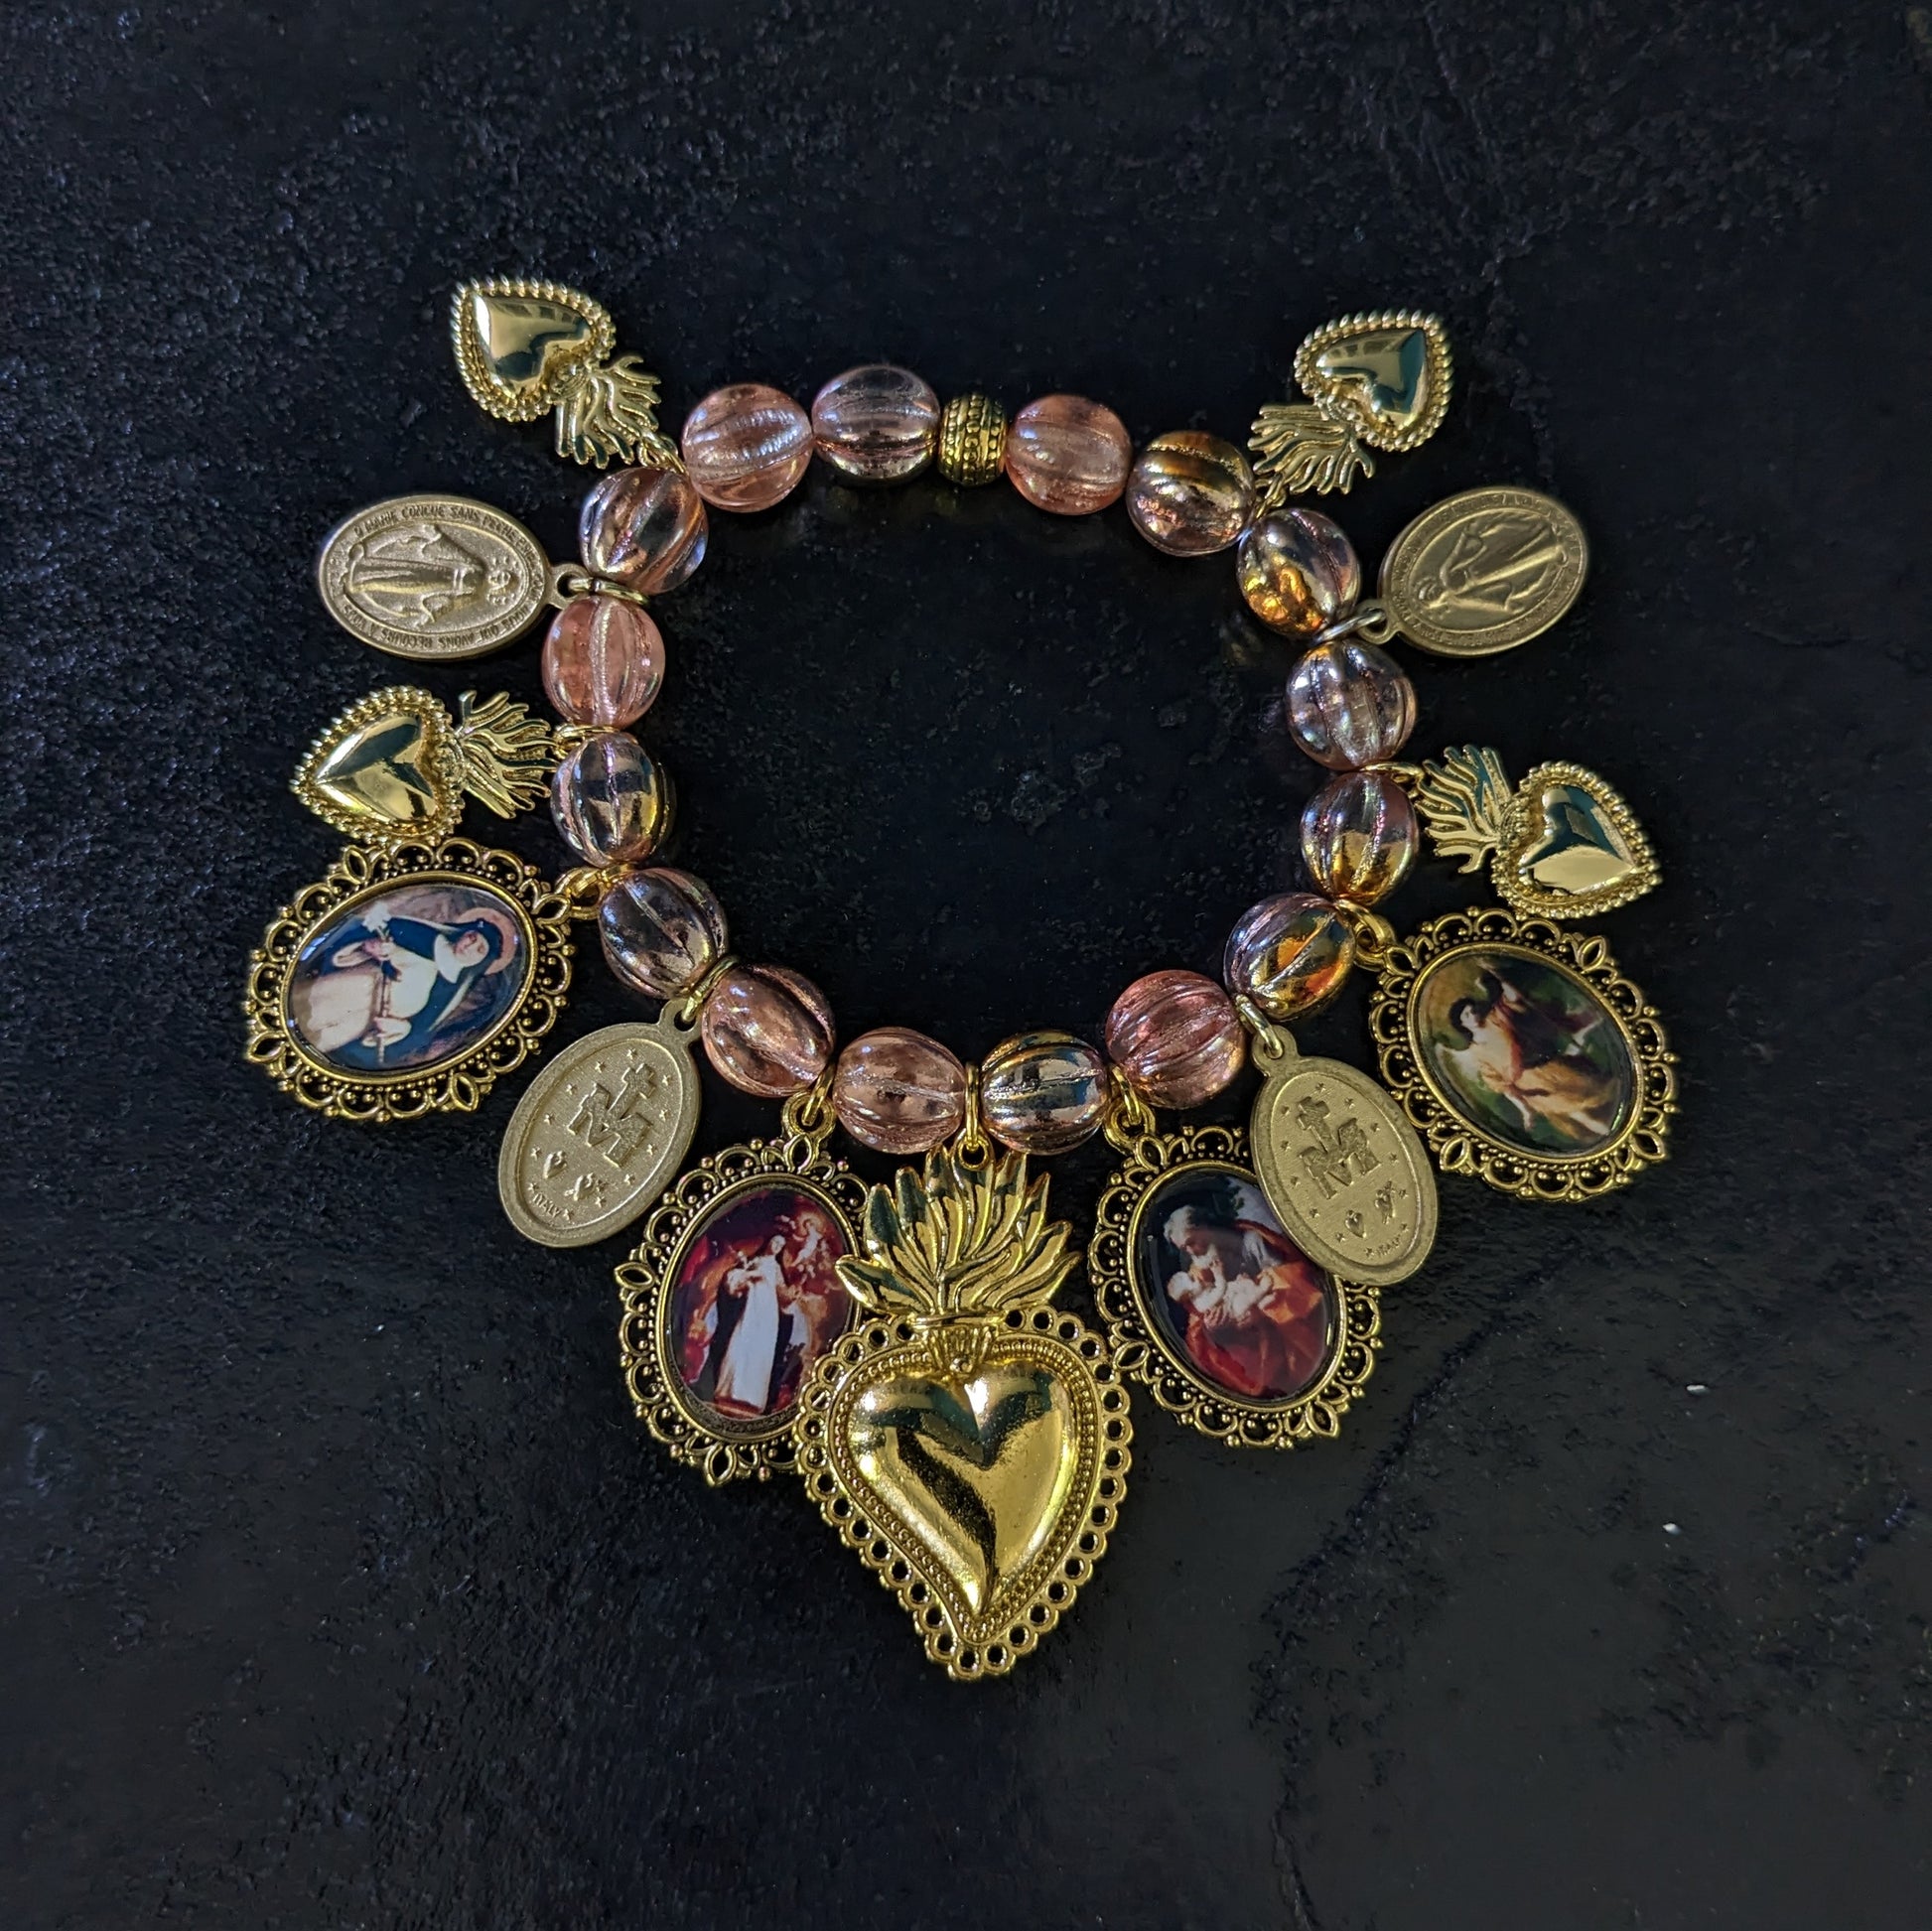 Fait à la main, ce bracelet élégant est orné de médailles catholiques richement détaillées et colorées, et ponctué de médailles miraculeuses.